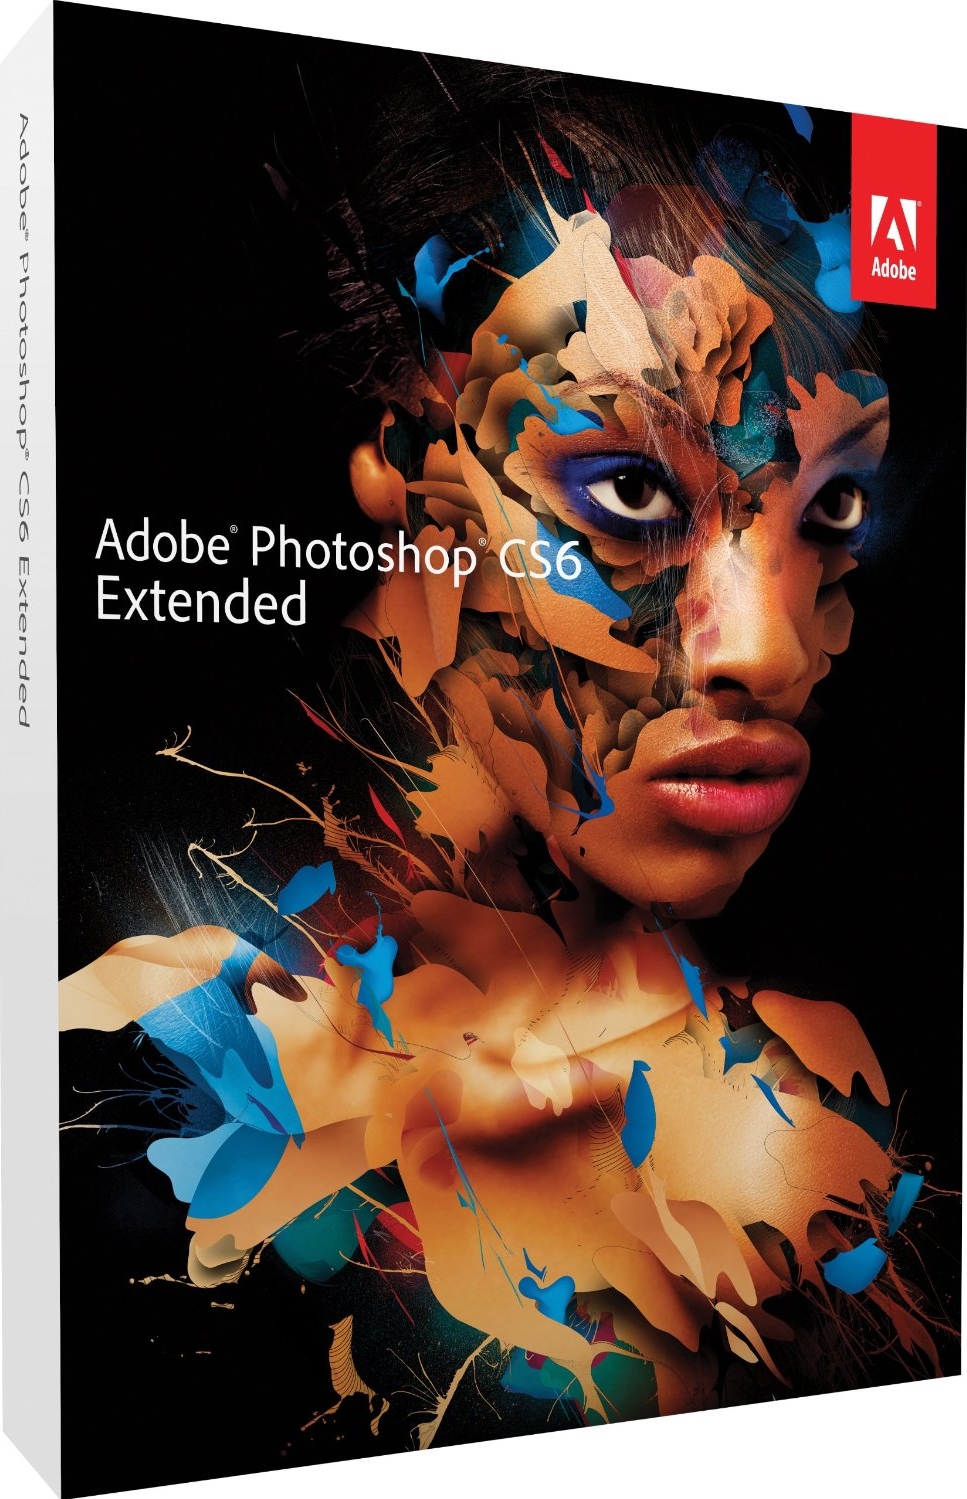 Adobe photoshop cs6 extended v13.0 full version crack